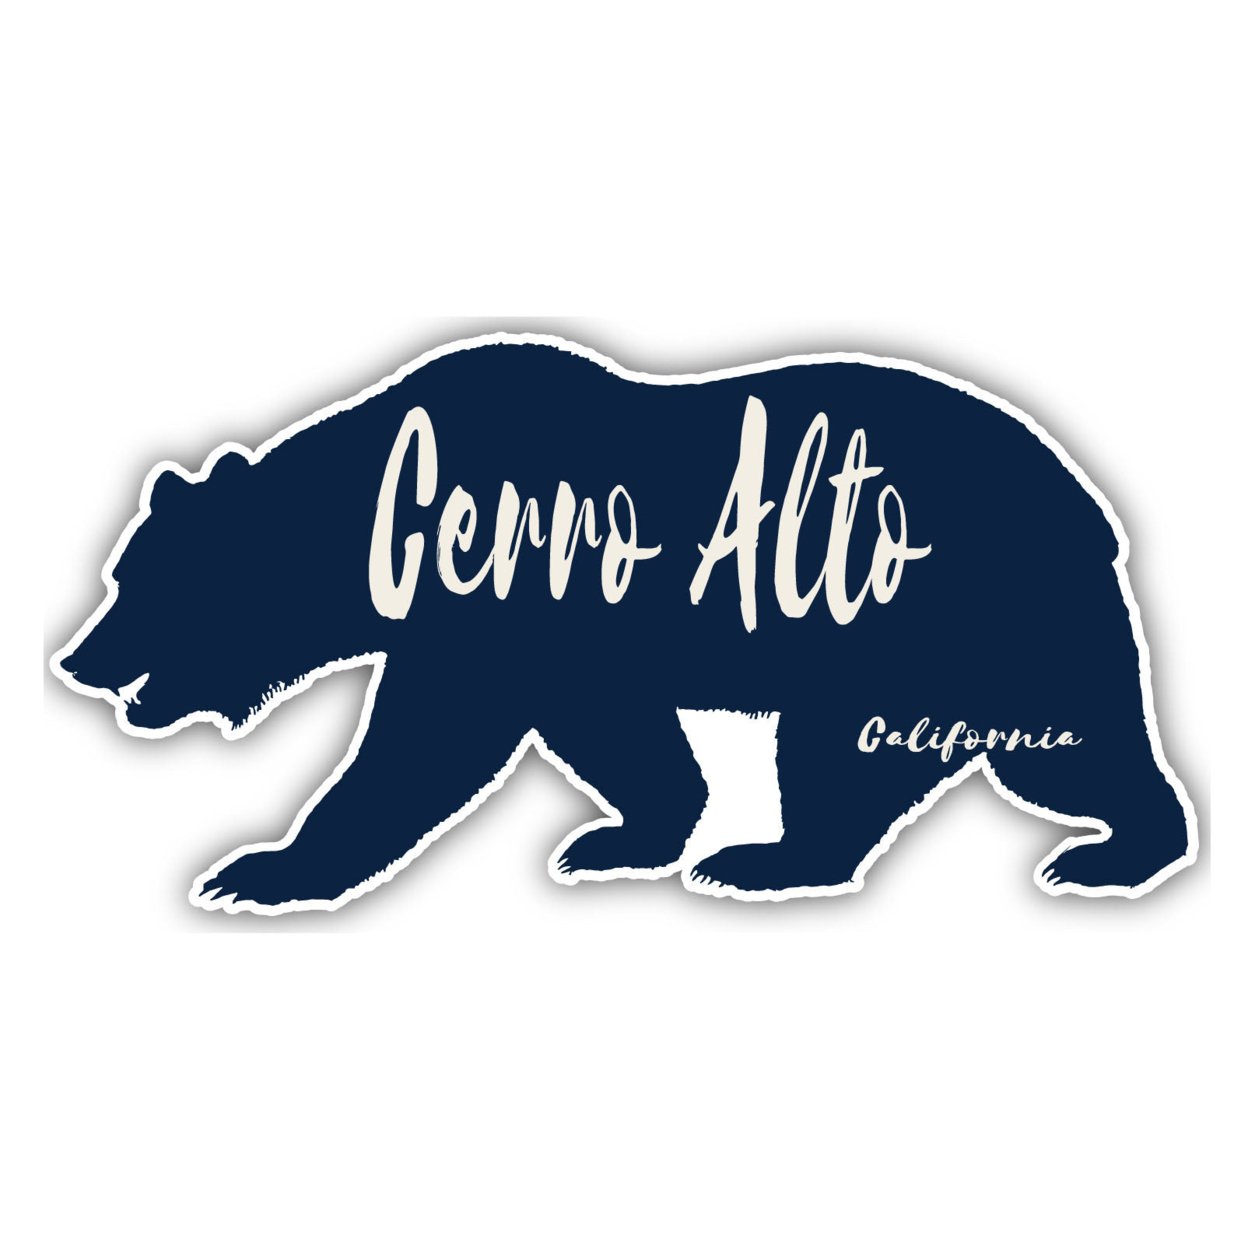 Cerro Alto California Souvenir Decorative Stickers (Choose Theme And Size) - Single Unit, 12-Inch, Bear